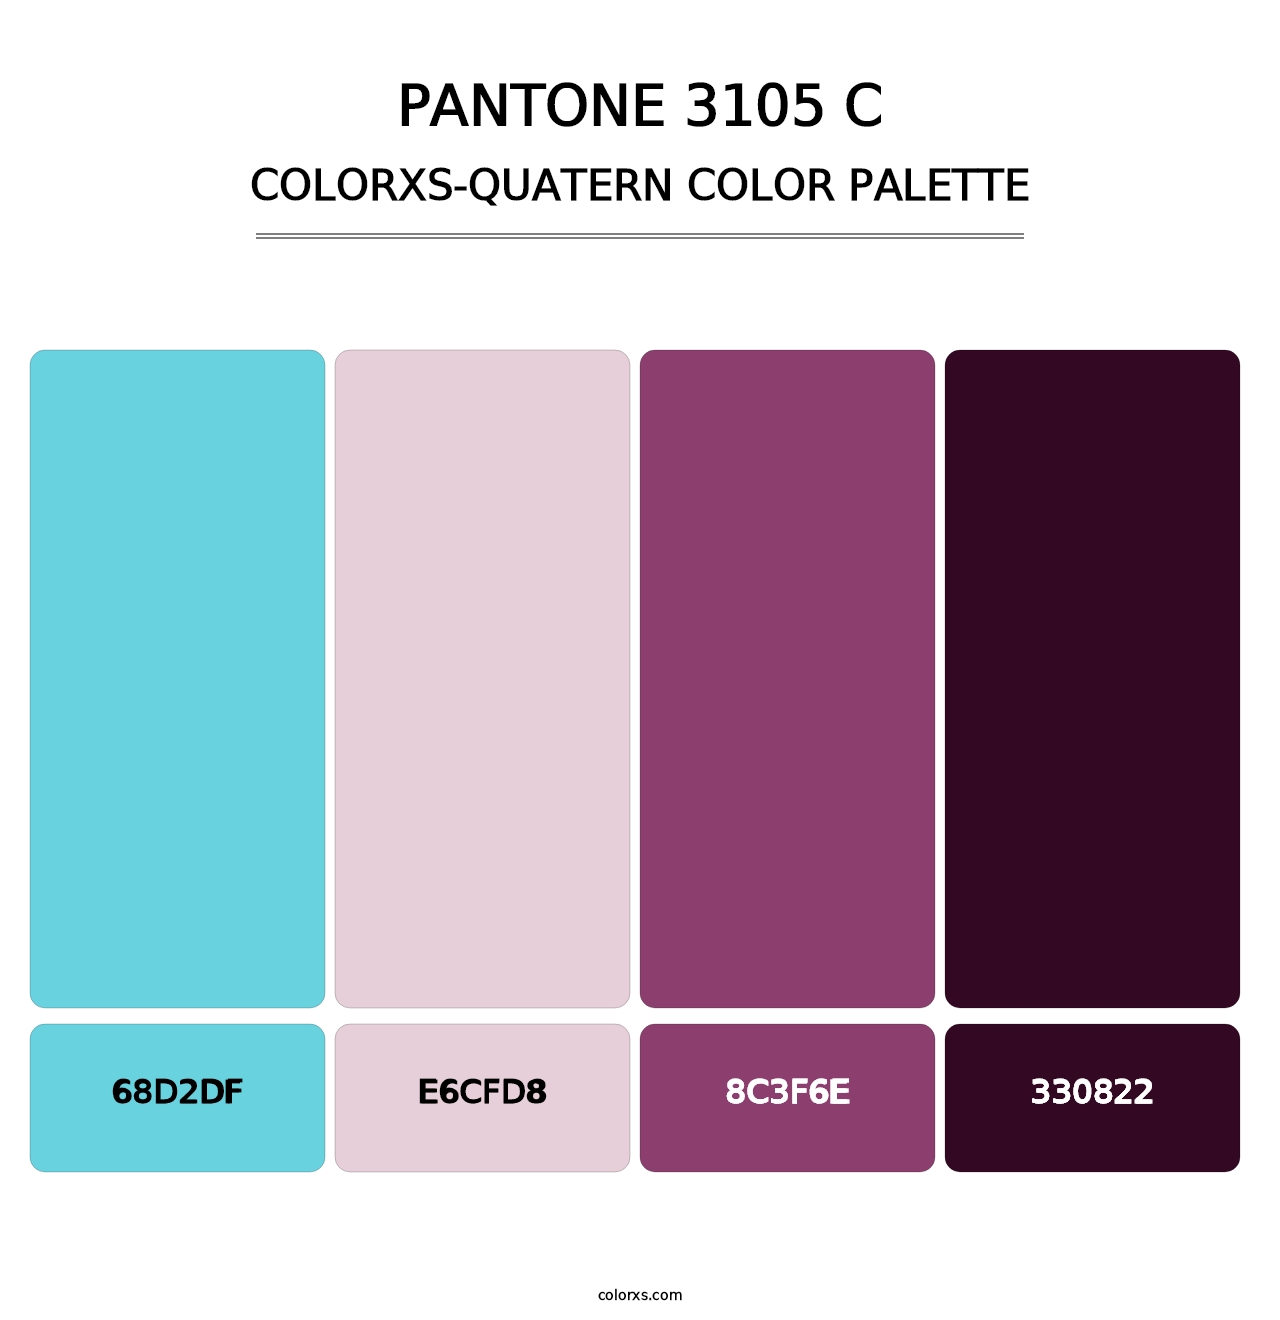 PANTONE 3105 C - Colorxs Quatern Palette